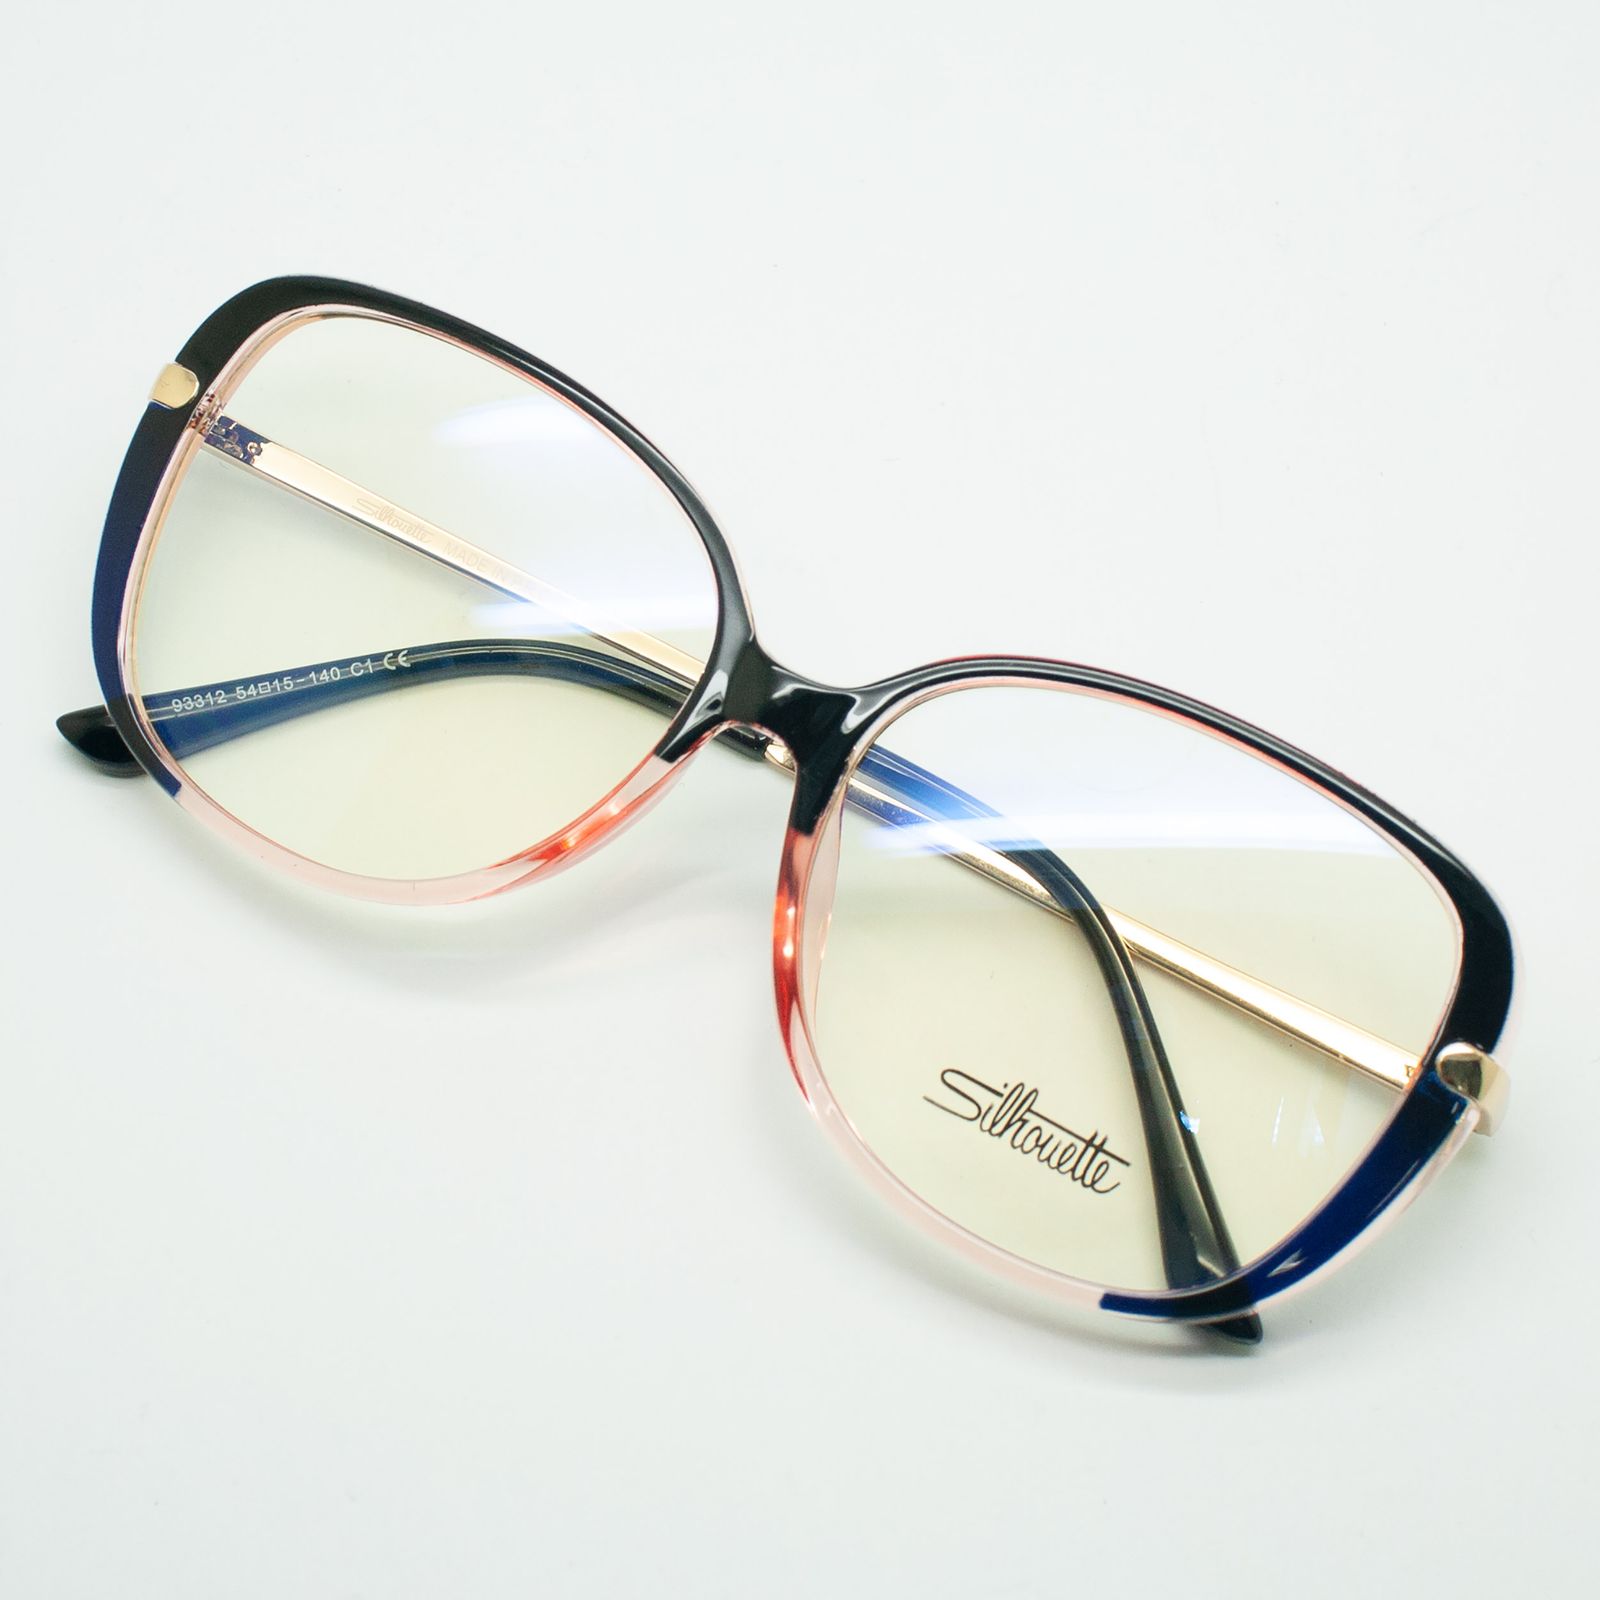 فریم عینک طبی سیلوئت مدل 93312 C1 G -  - 2